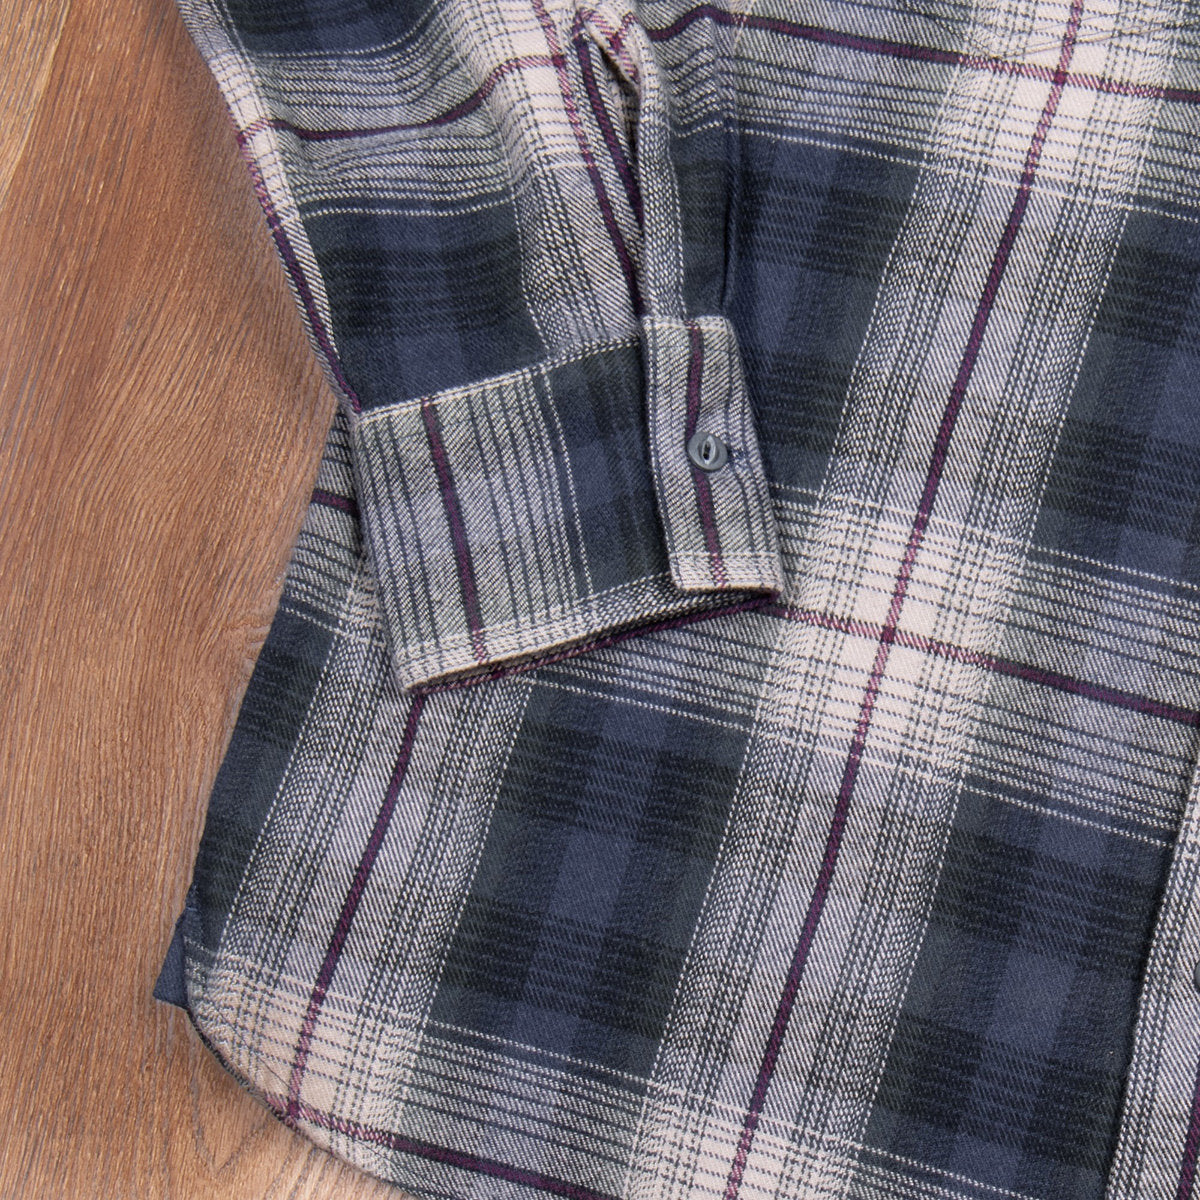 1937 Roamer Shirt - Blue Beige Check Flannel